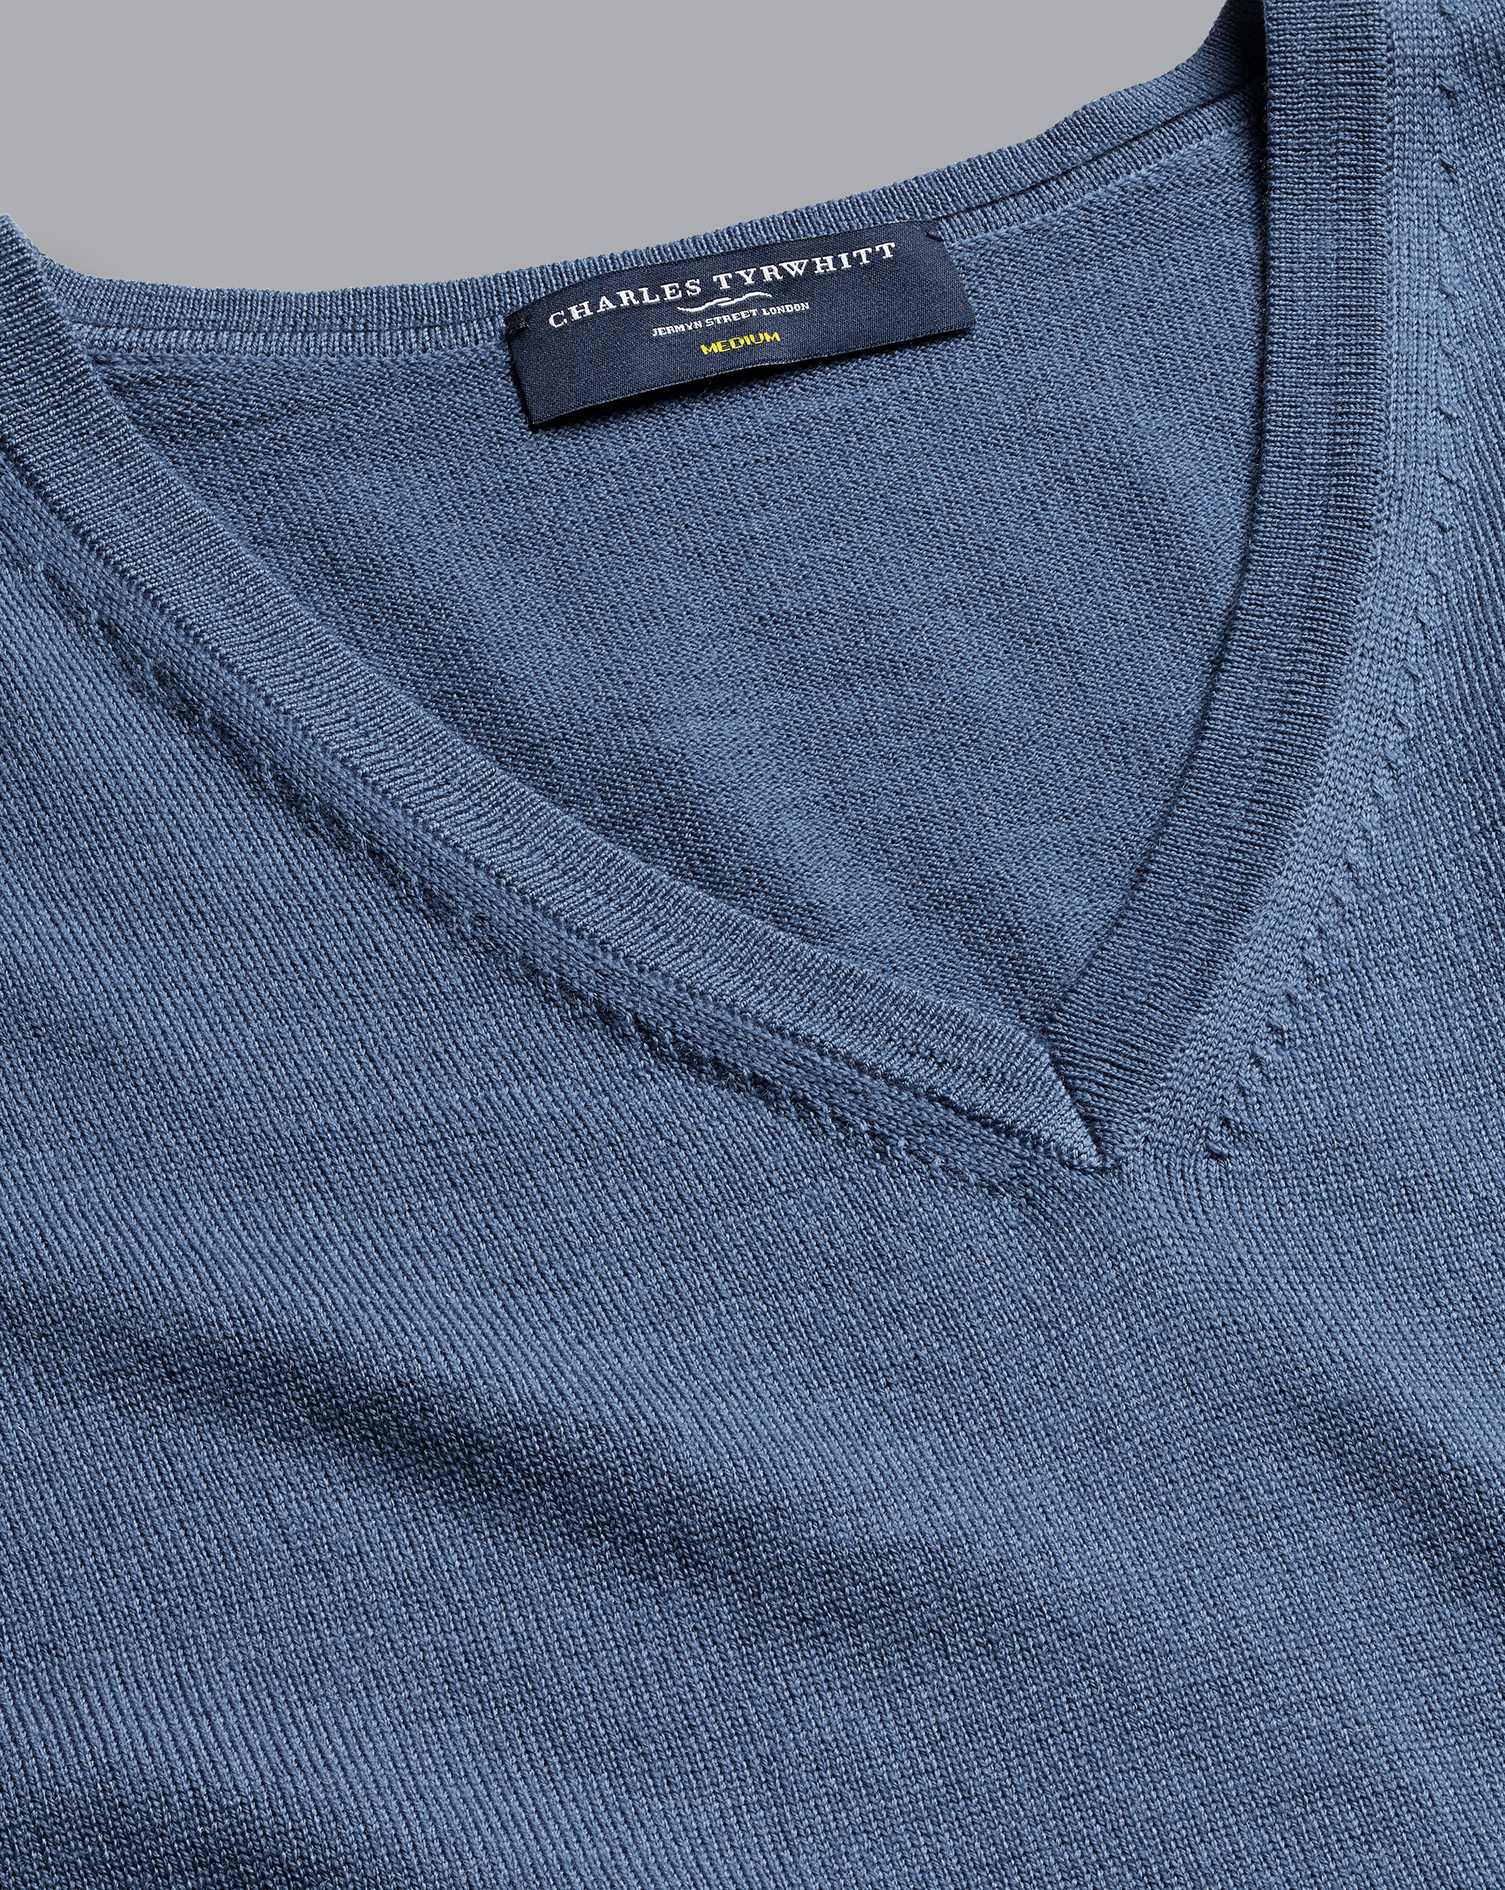 Men's Charles Tyrwhitt Merino V-Neck Sweater - Steel Blue Size Large Wool
